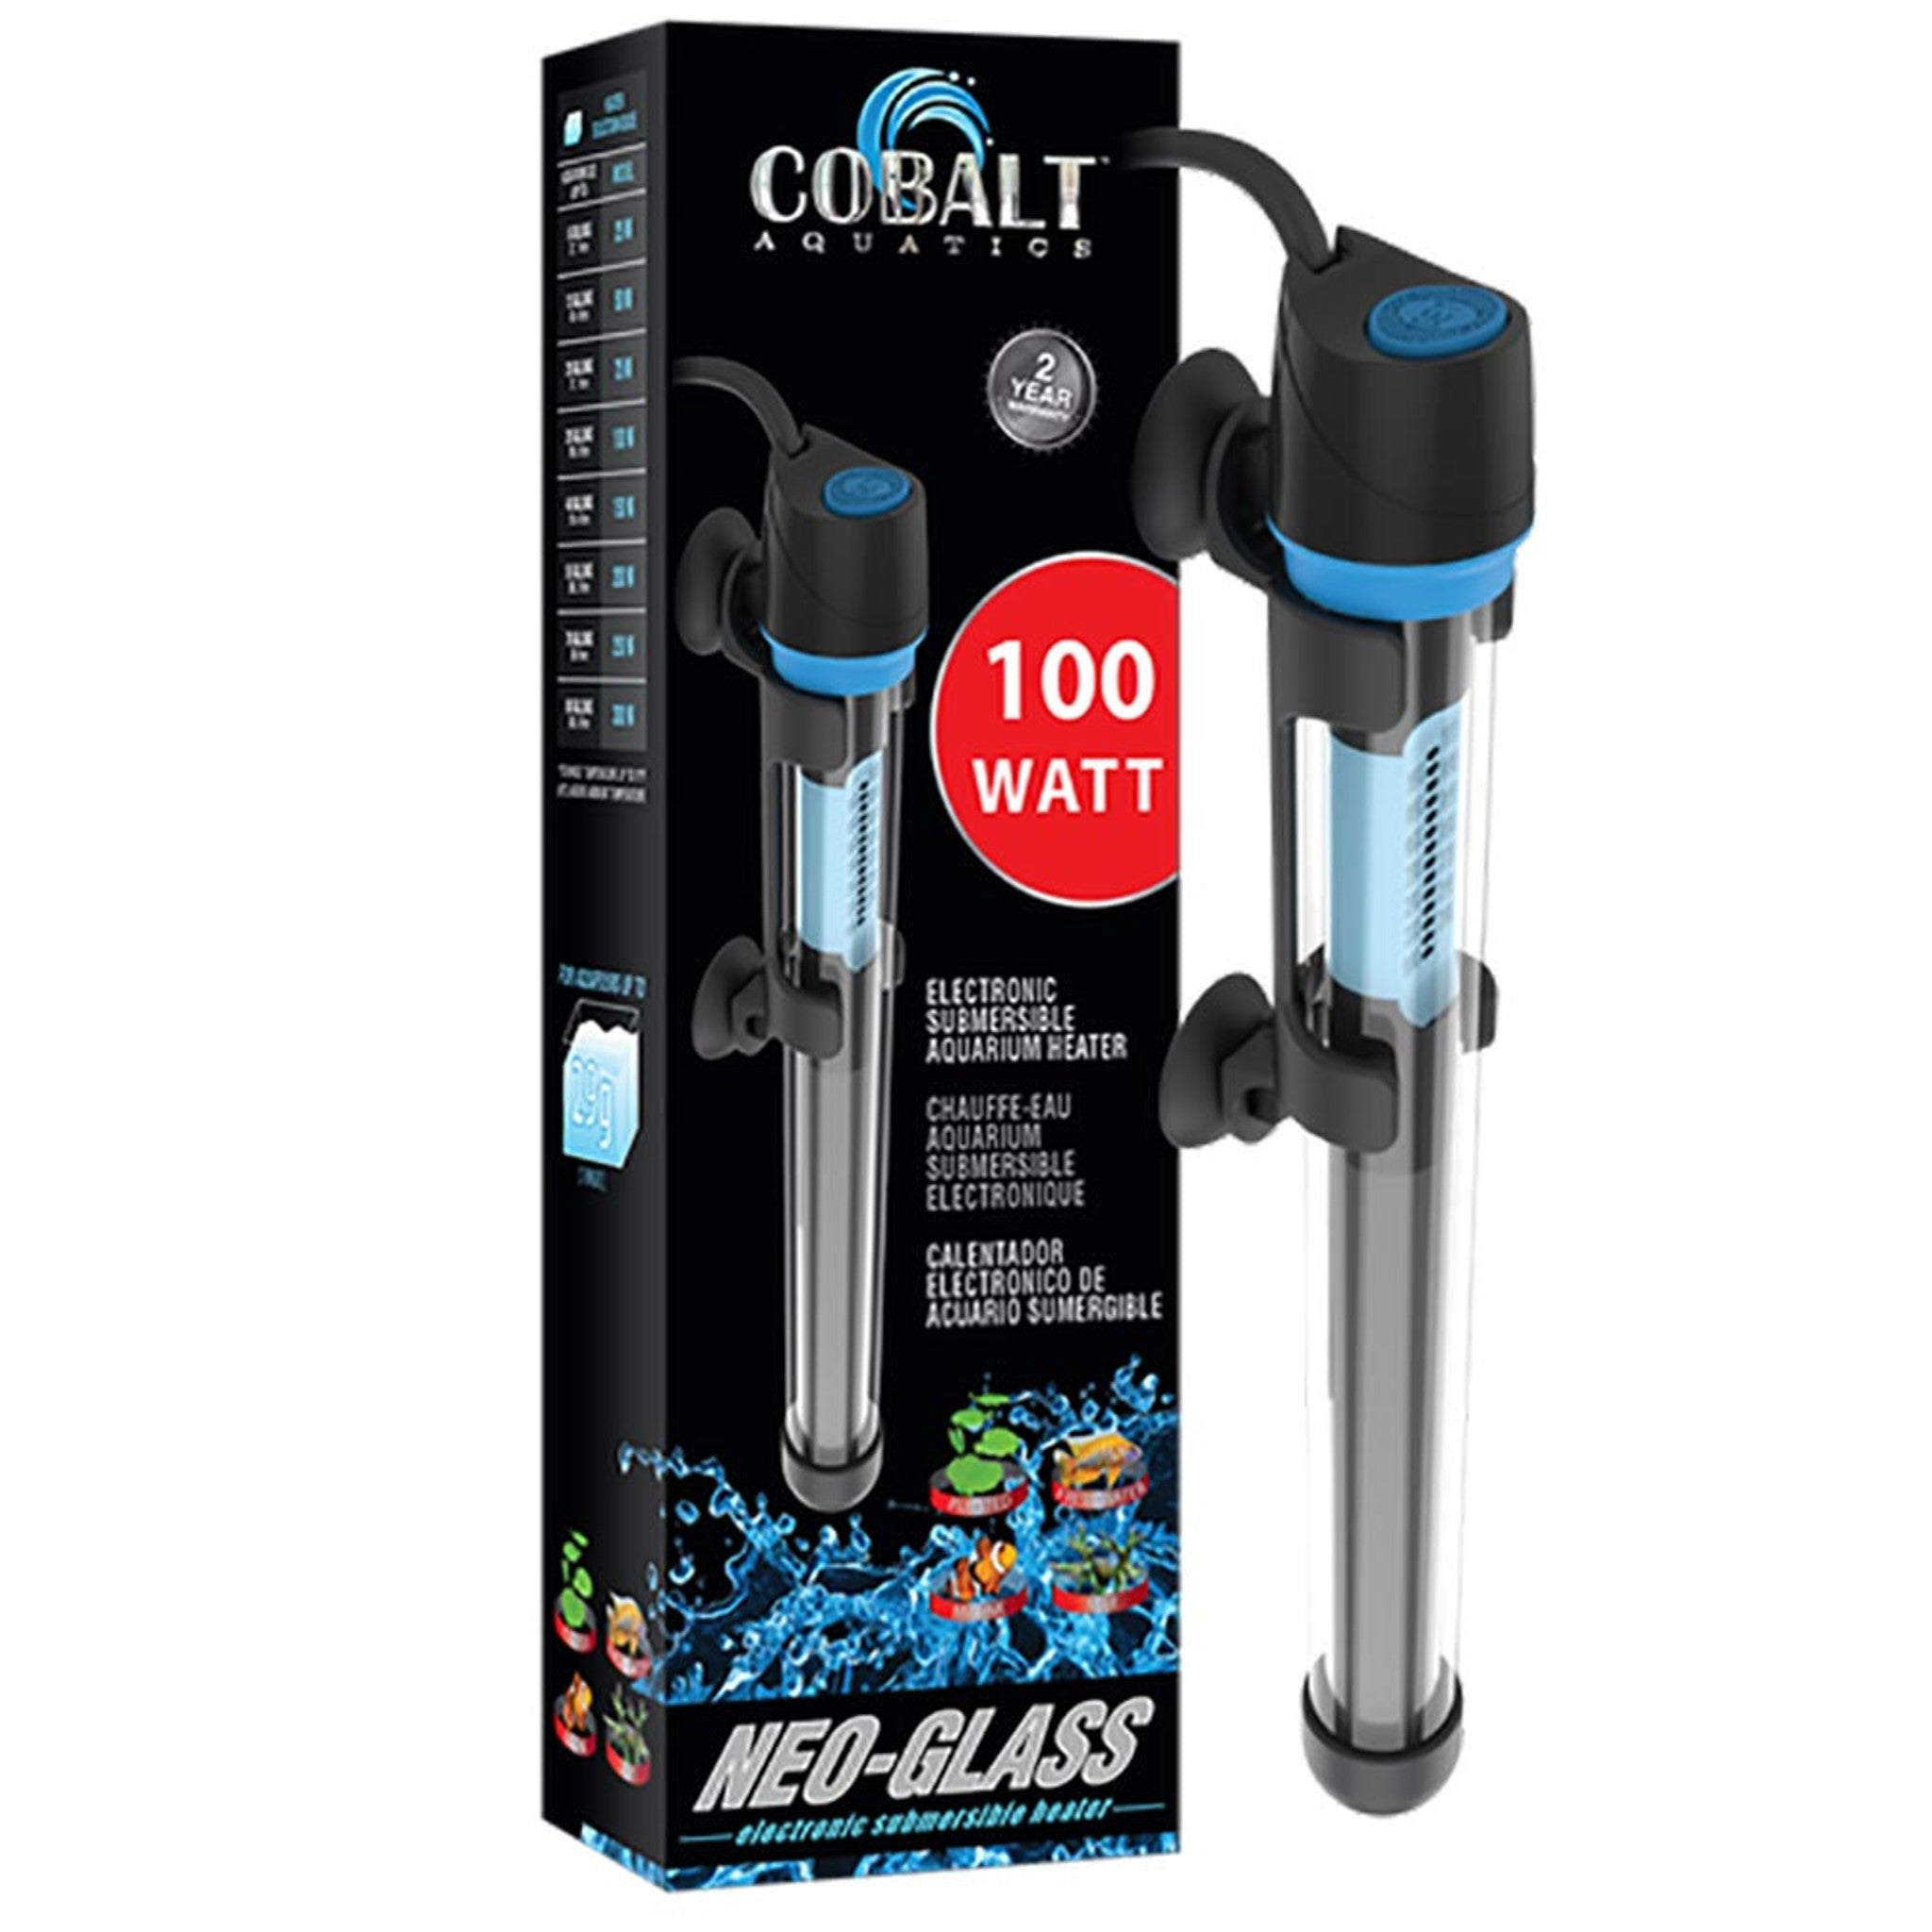 Cobalt Neo-Glass Submersible Aquarium Heater